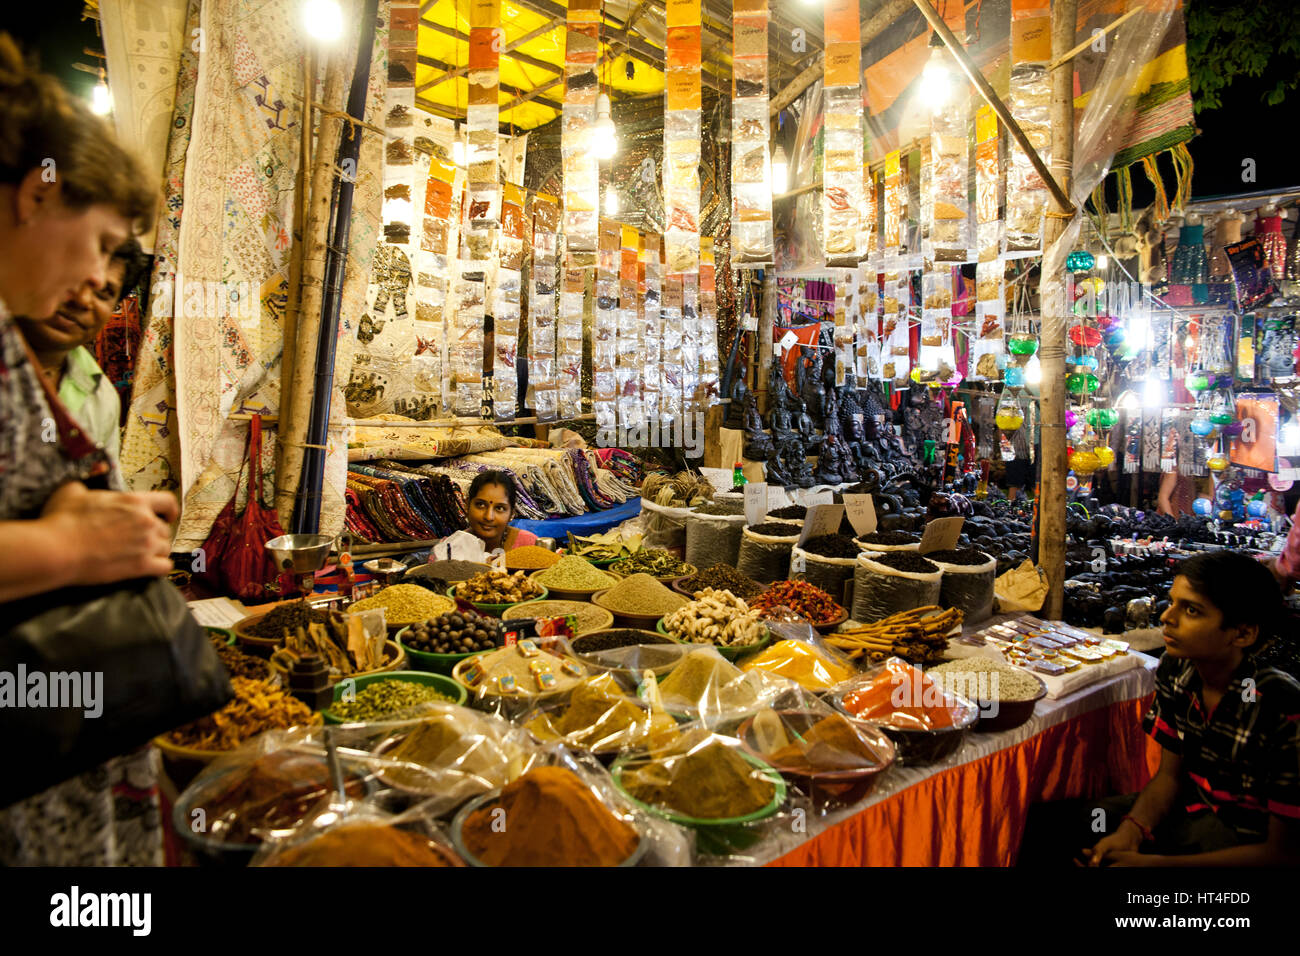 Frau verkaufen verschiedene Arten von Gewürzen am Samstag Nachtmarkt in Arpora, Indien. Der Markt ist geöffnet jeden Samstag während der touristischen Saison. Die Stockfoto